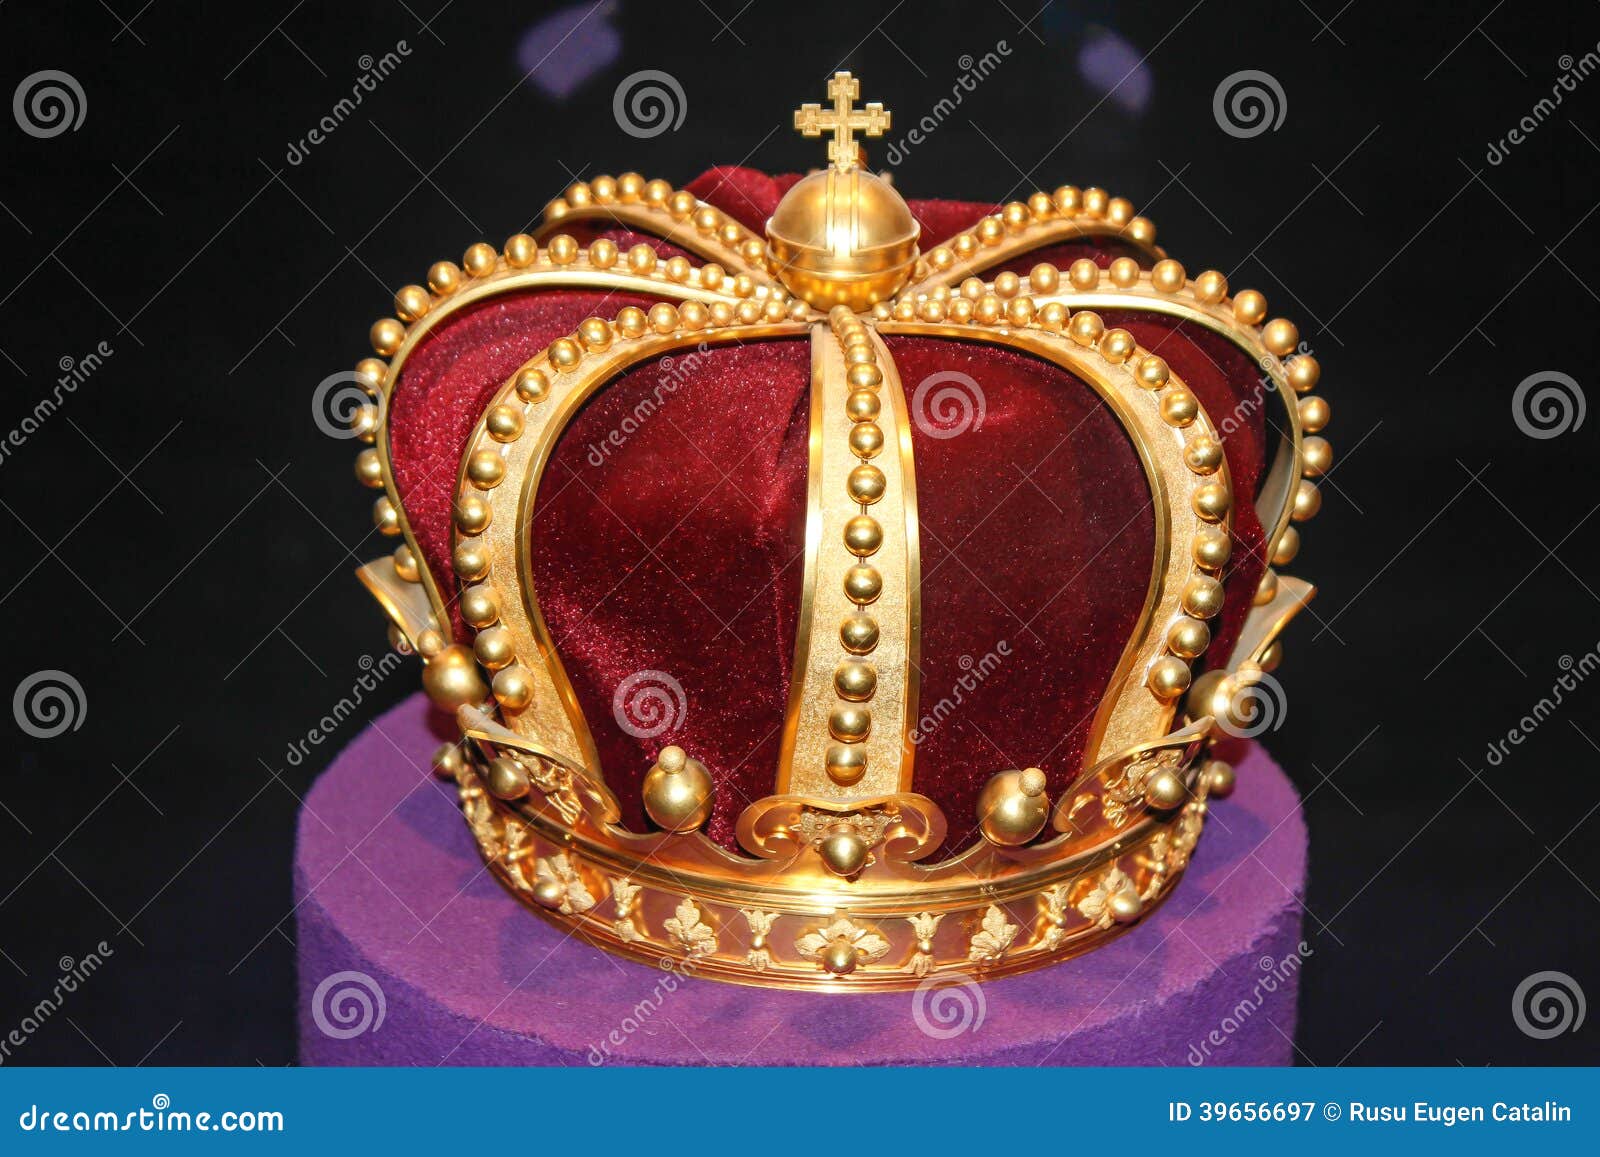 royal gold crown